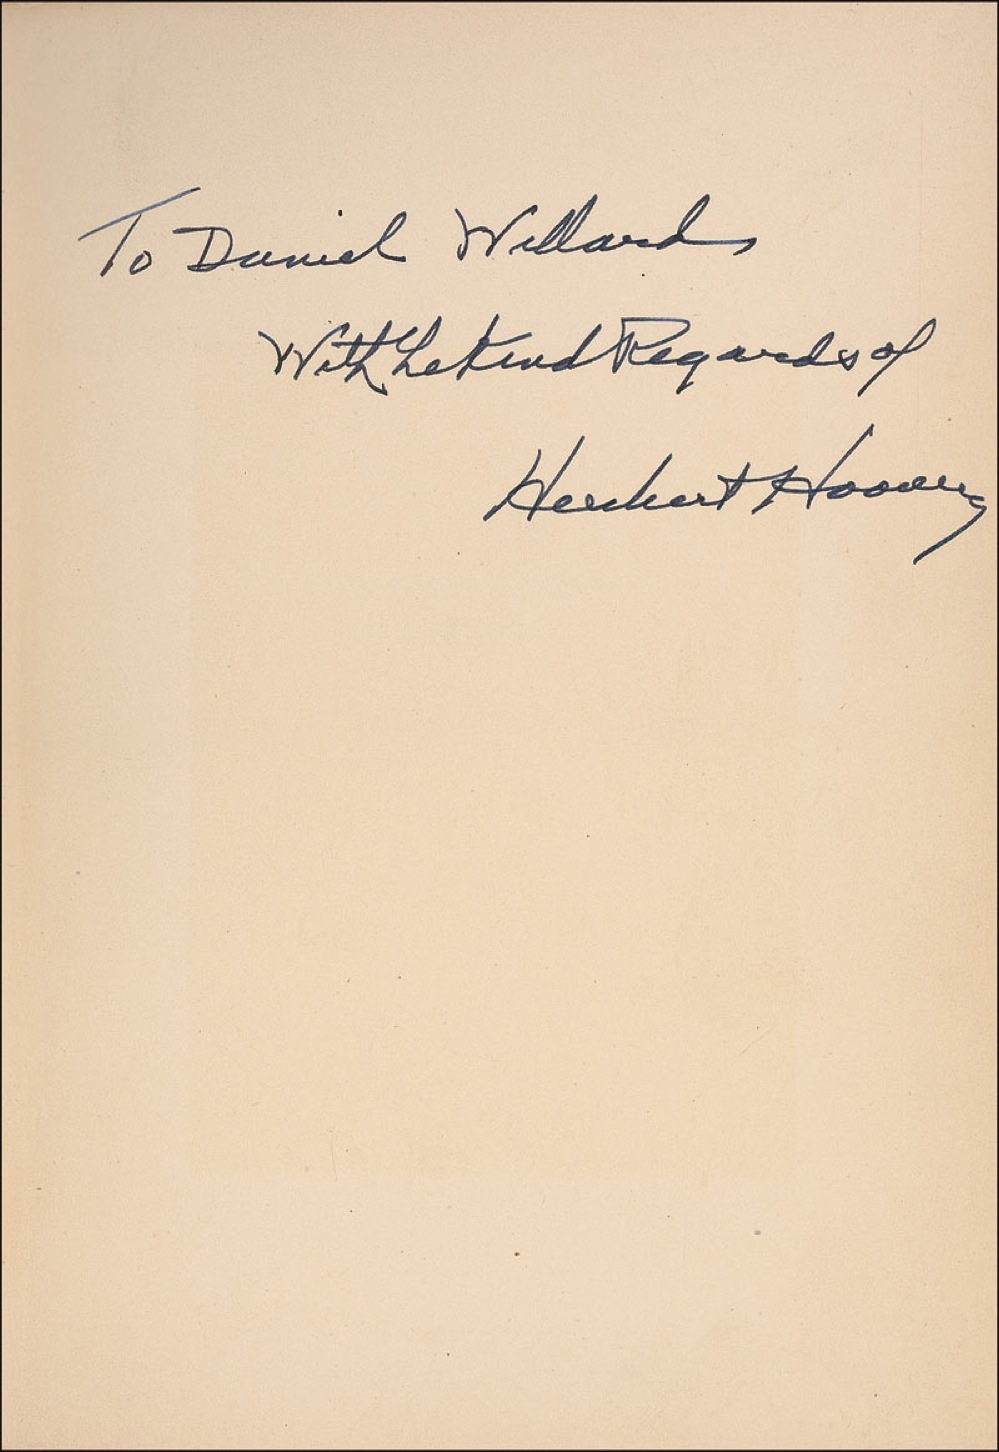 Lot #83 Herbert Hoover